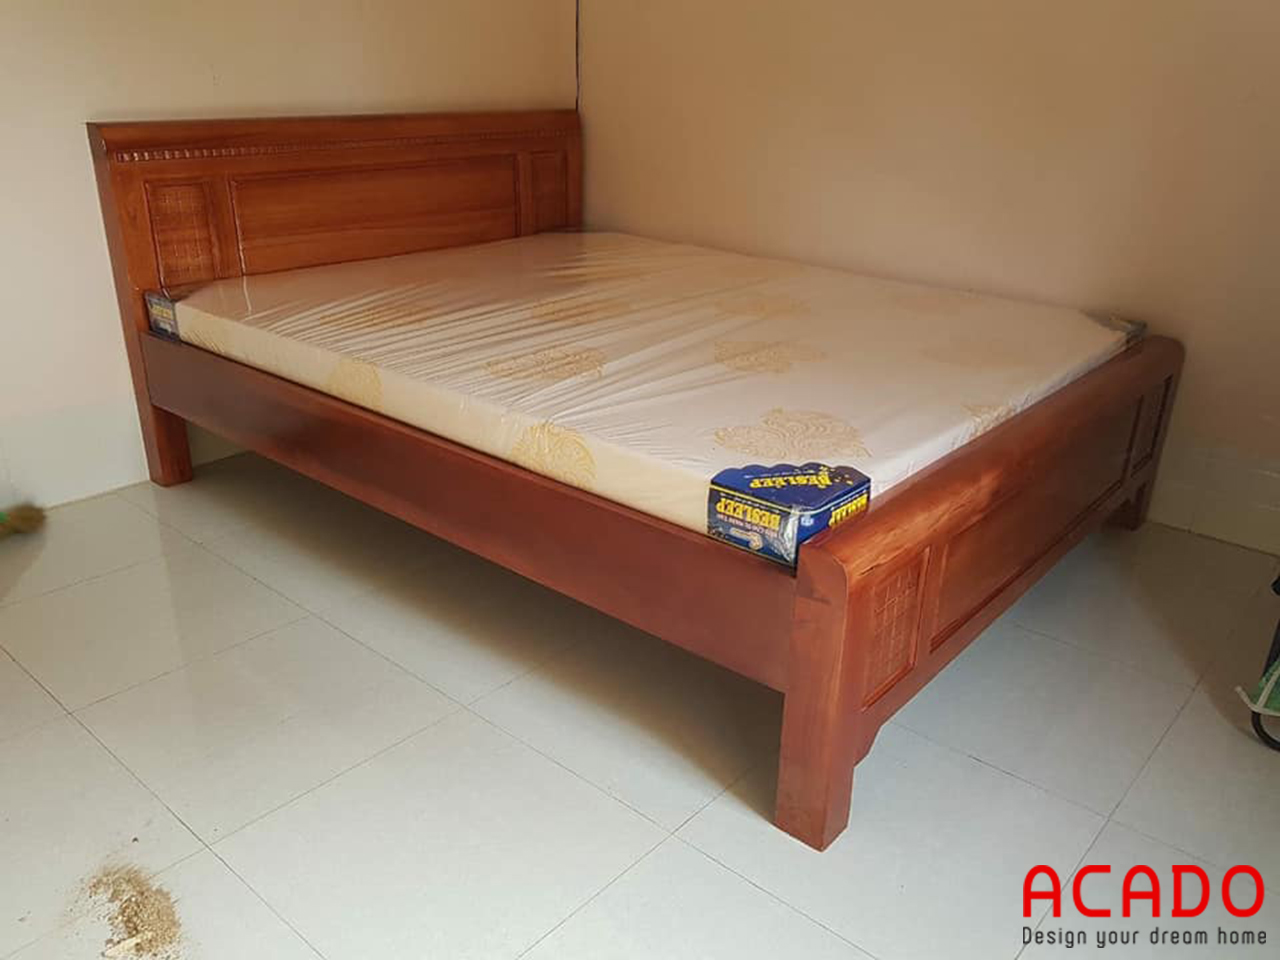 Gường ngủ gỗ xoan đào tự nhiên đẹp, bền với thời gian